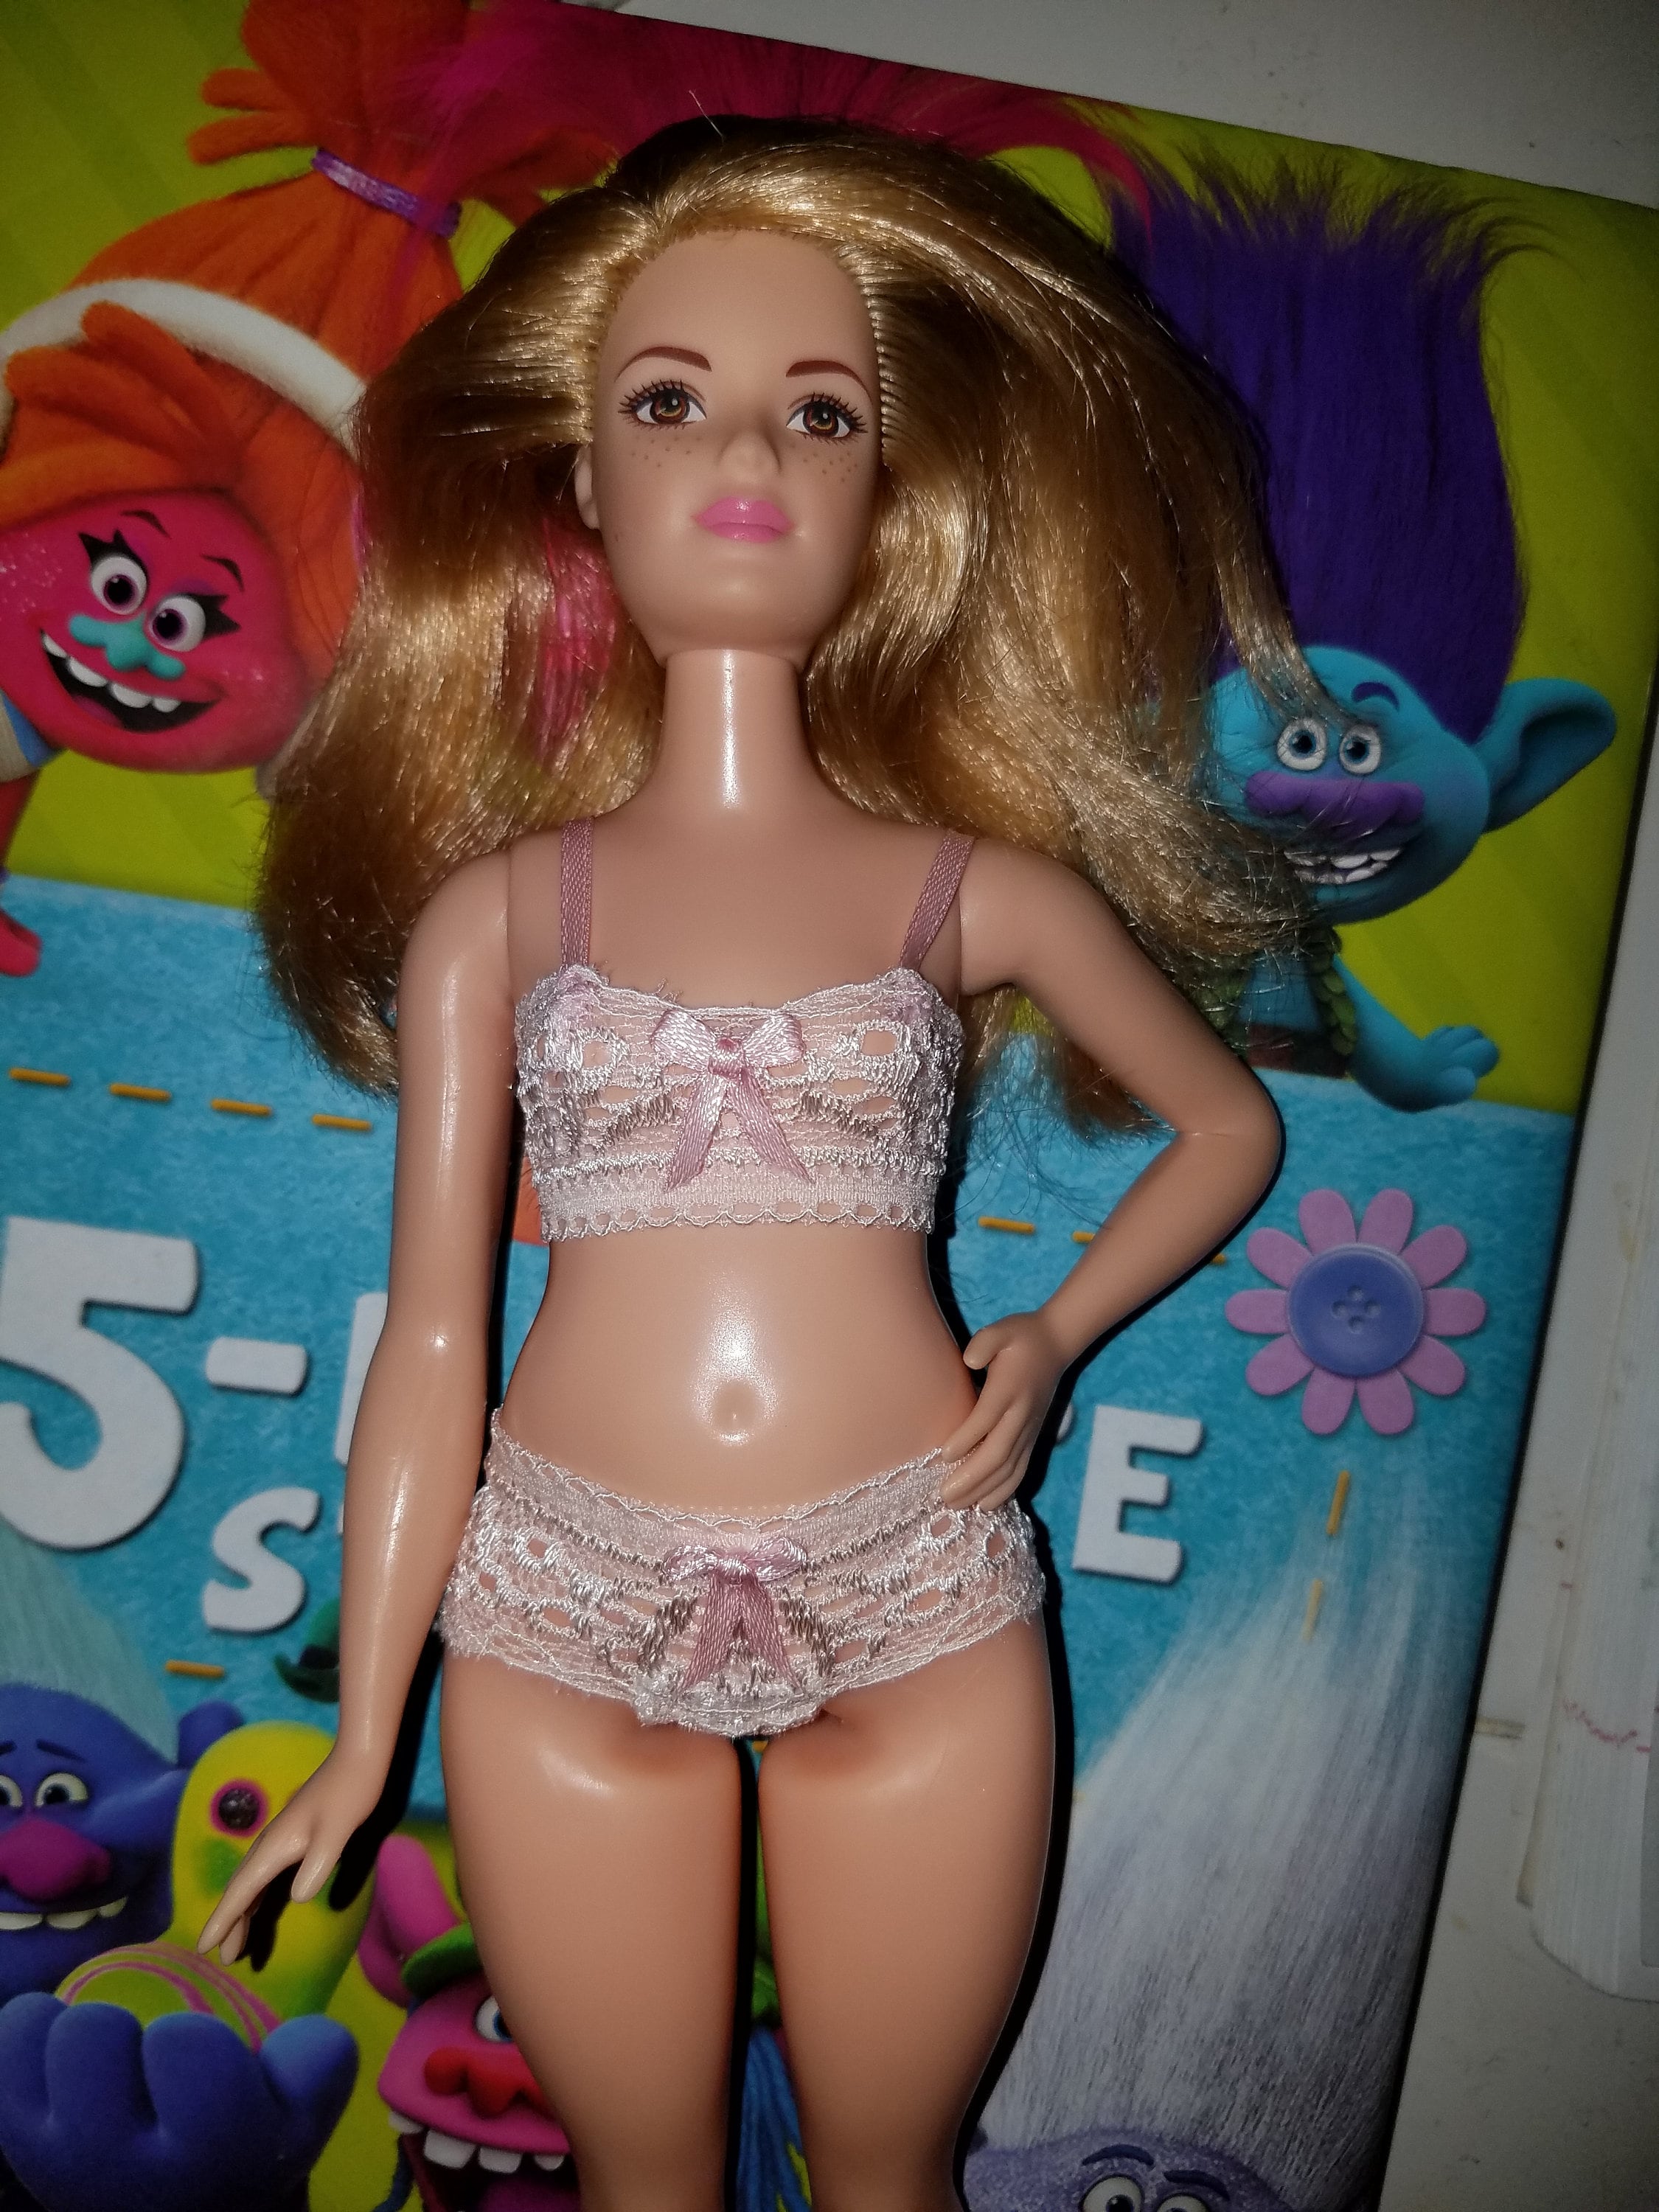 La Barbie era una bambola curvy e sexy per adulti – Fiore Avvelenato